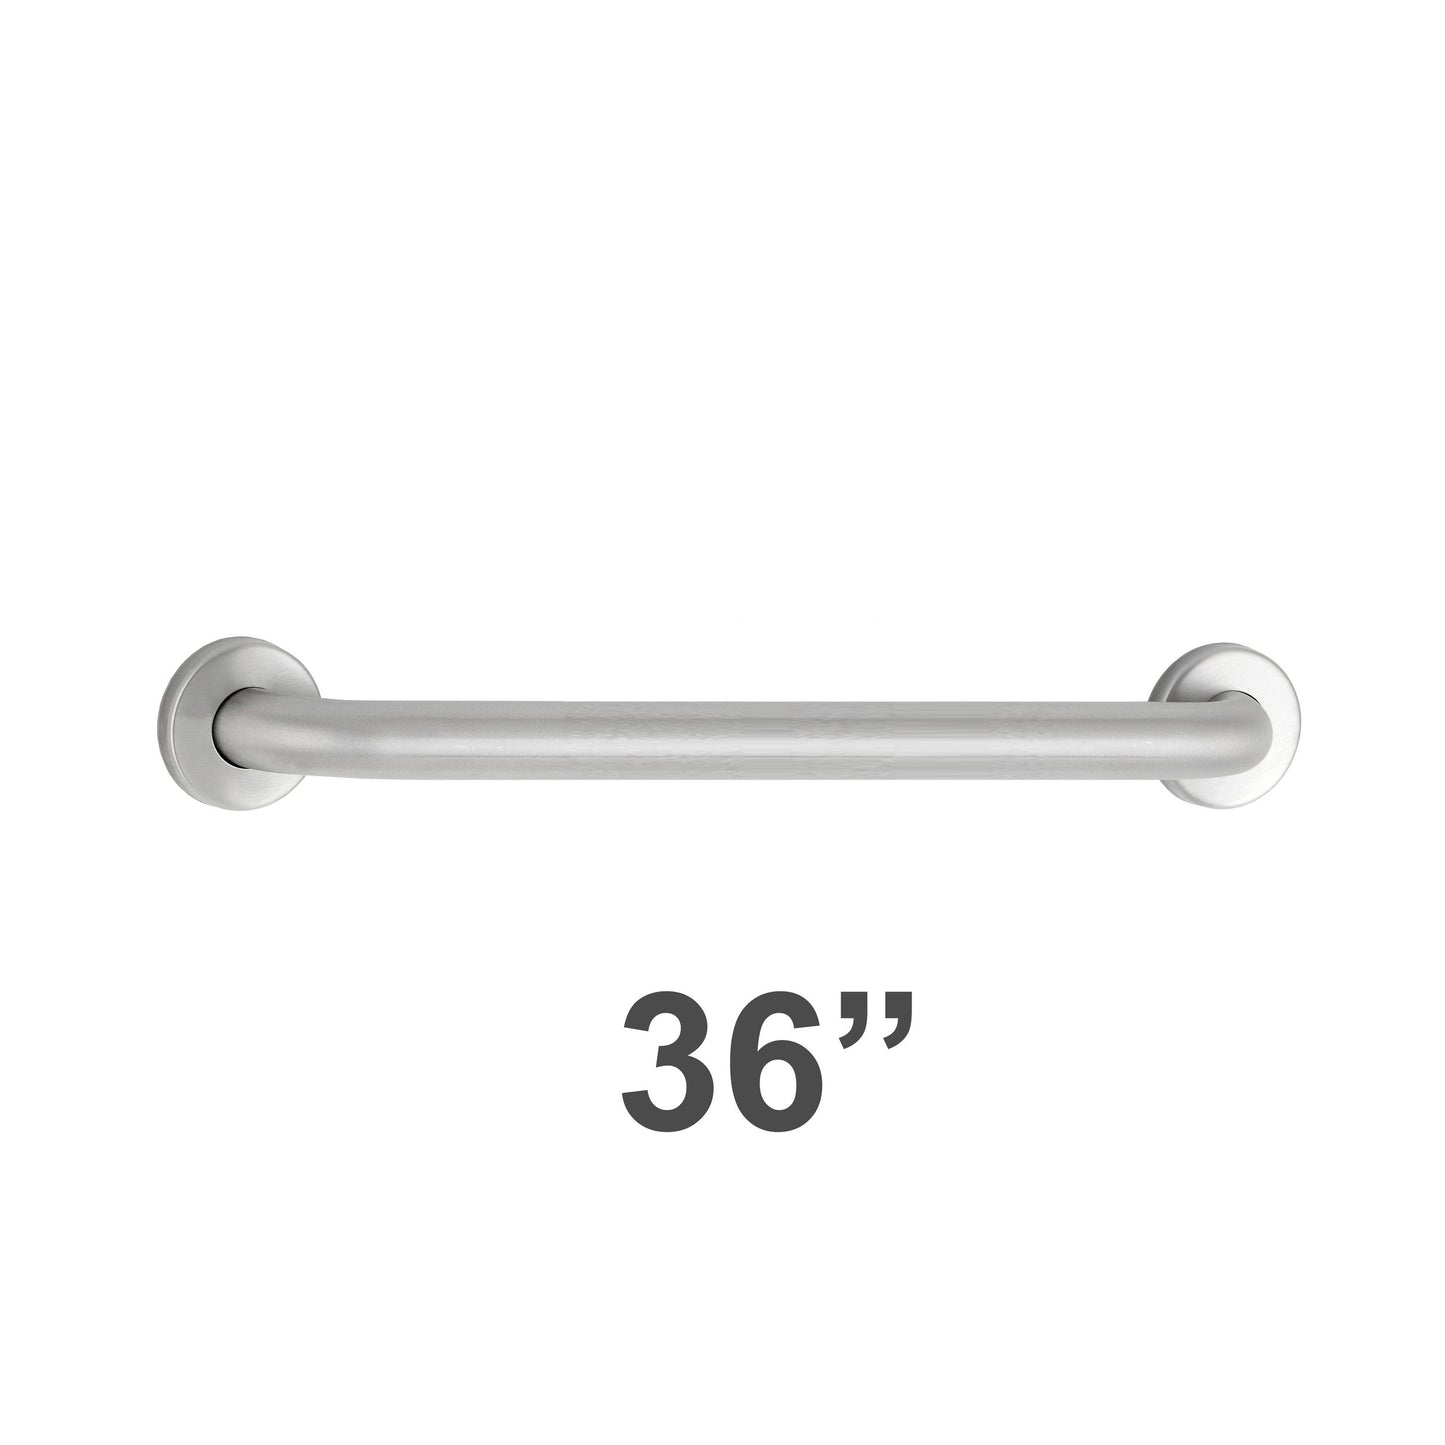 Bobrick 5806x36 - 1-1/4" Diameter 36"  Length Straight Grab Bar in Satin Stainless Steel